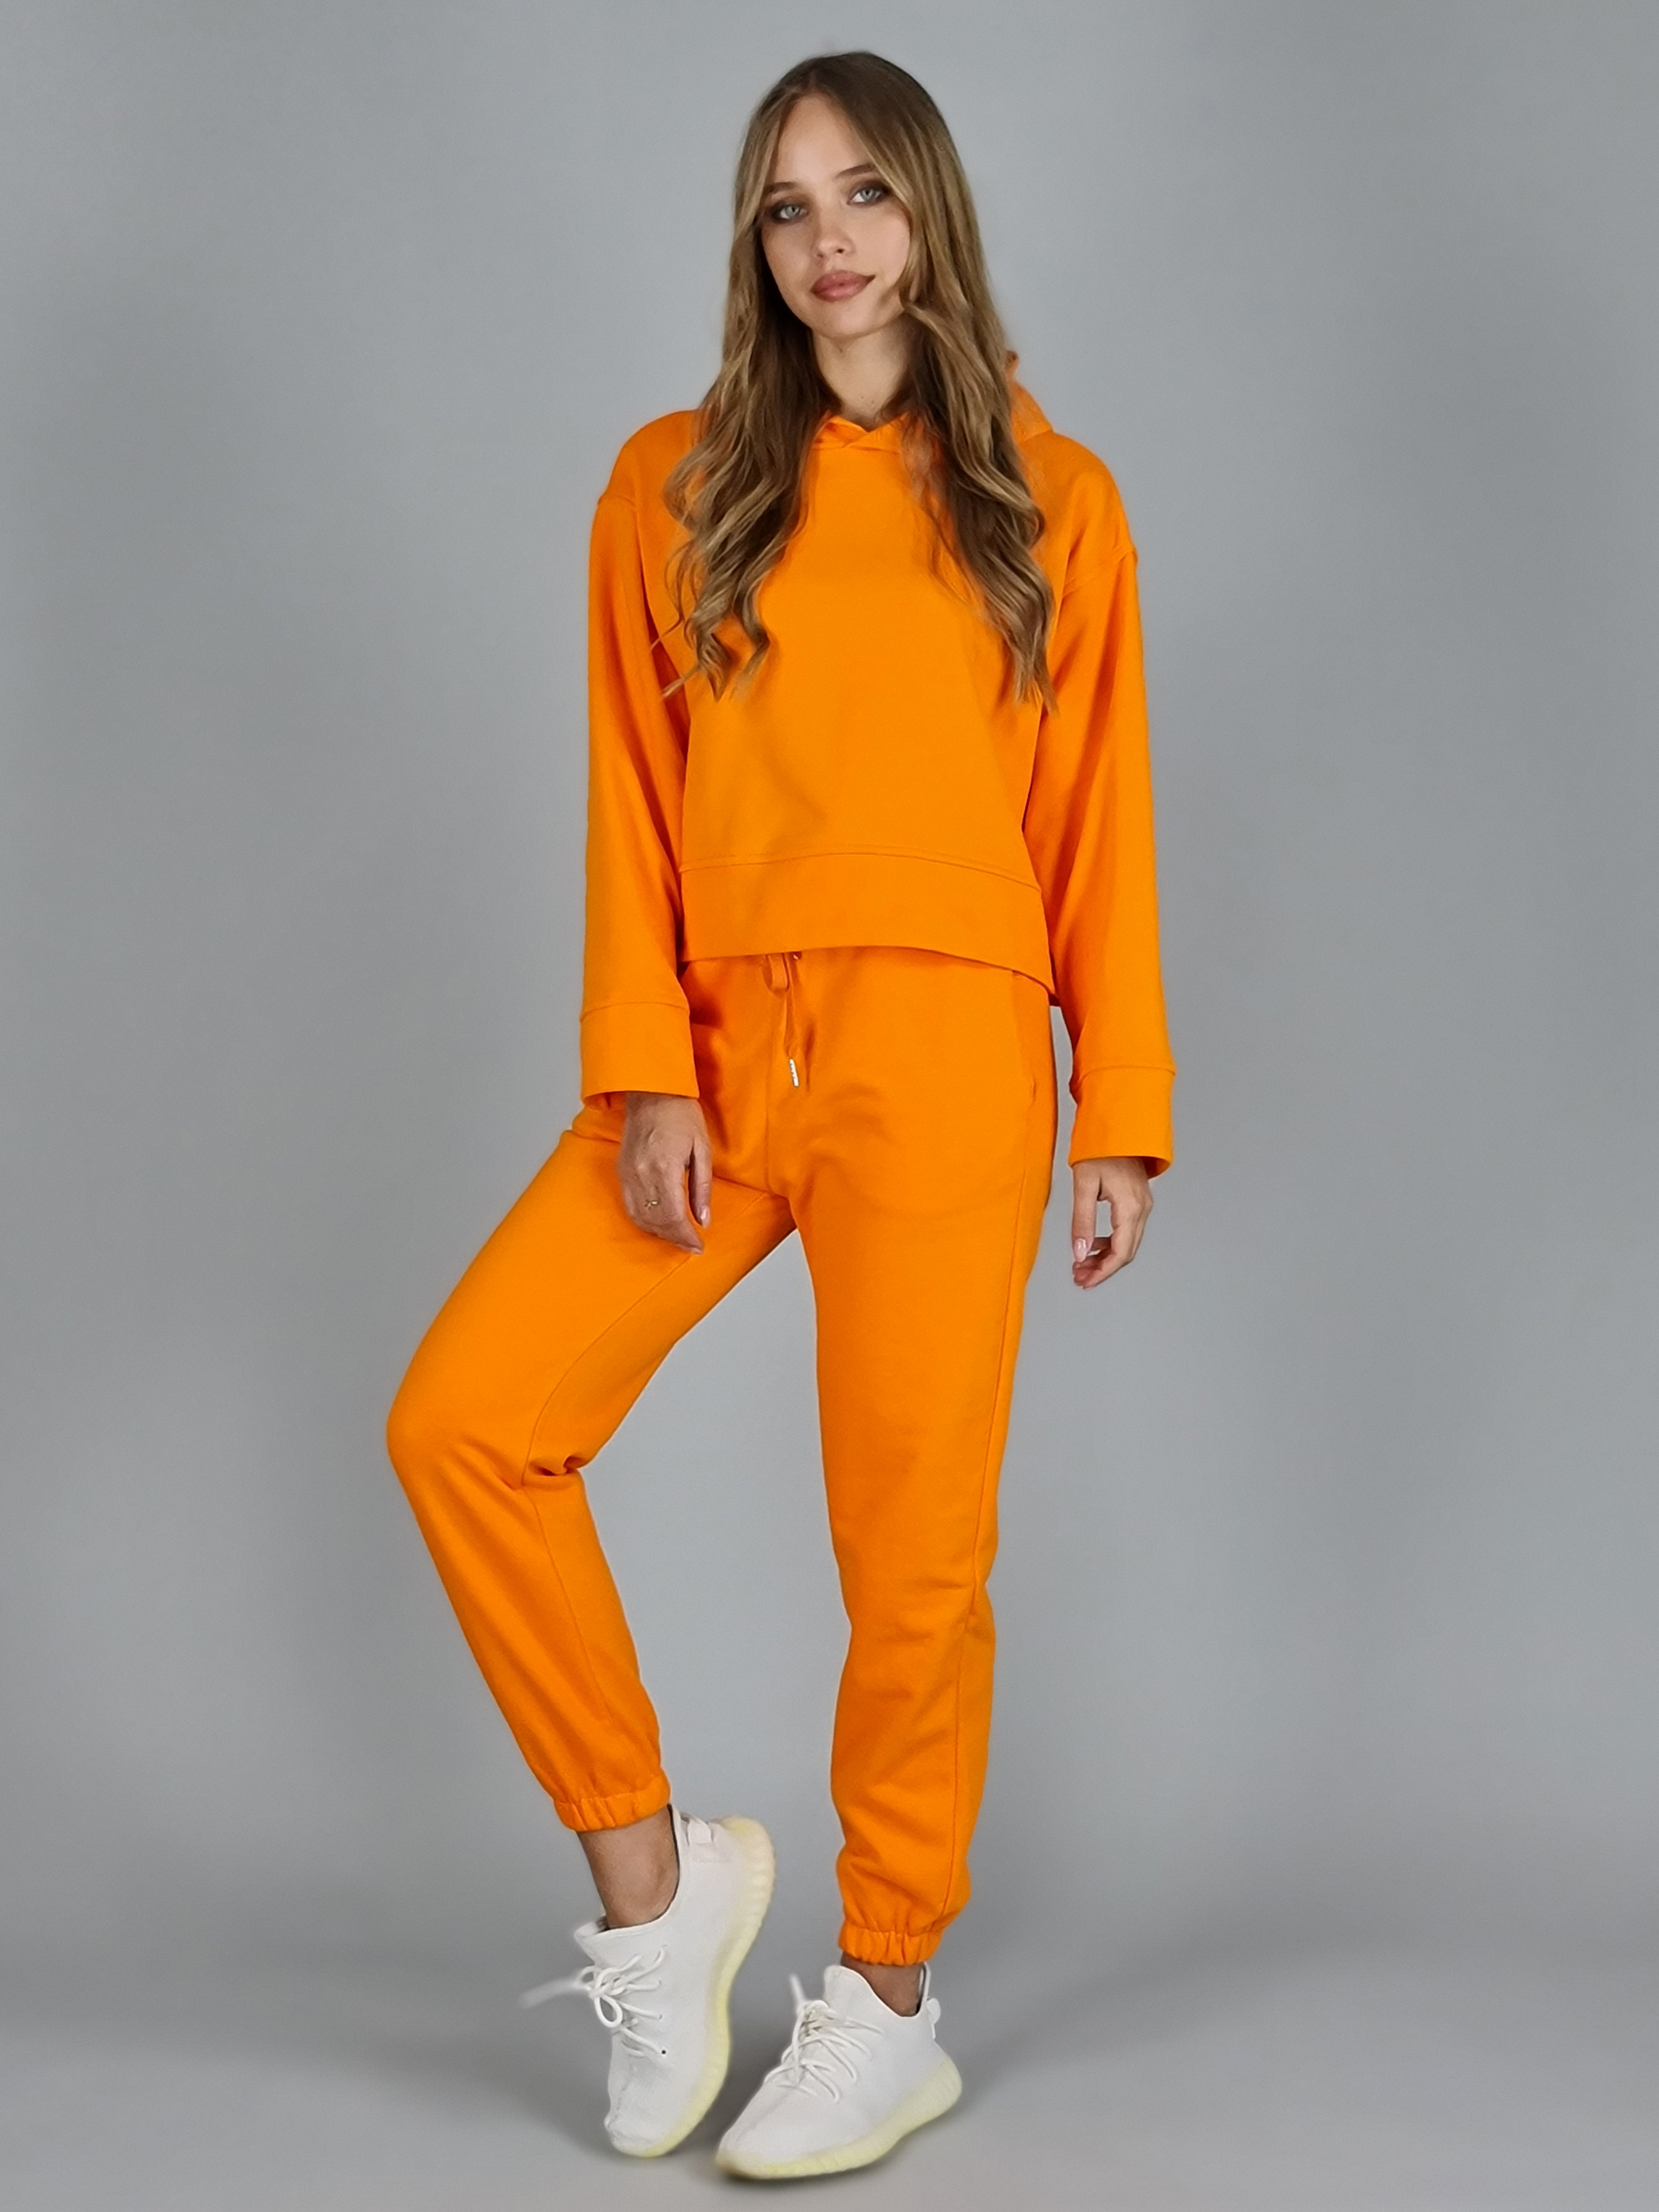 Оранжевый спортивный костюм женский. Ярко оранжевый спортивный костюм. Ярко оранжевый спортивный костюм женский.